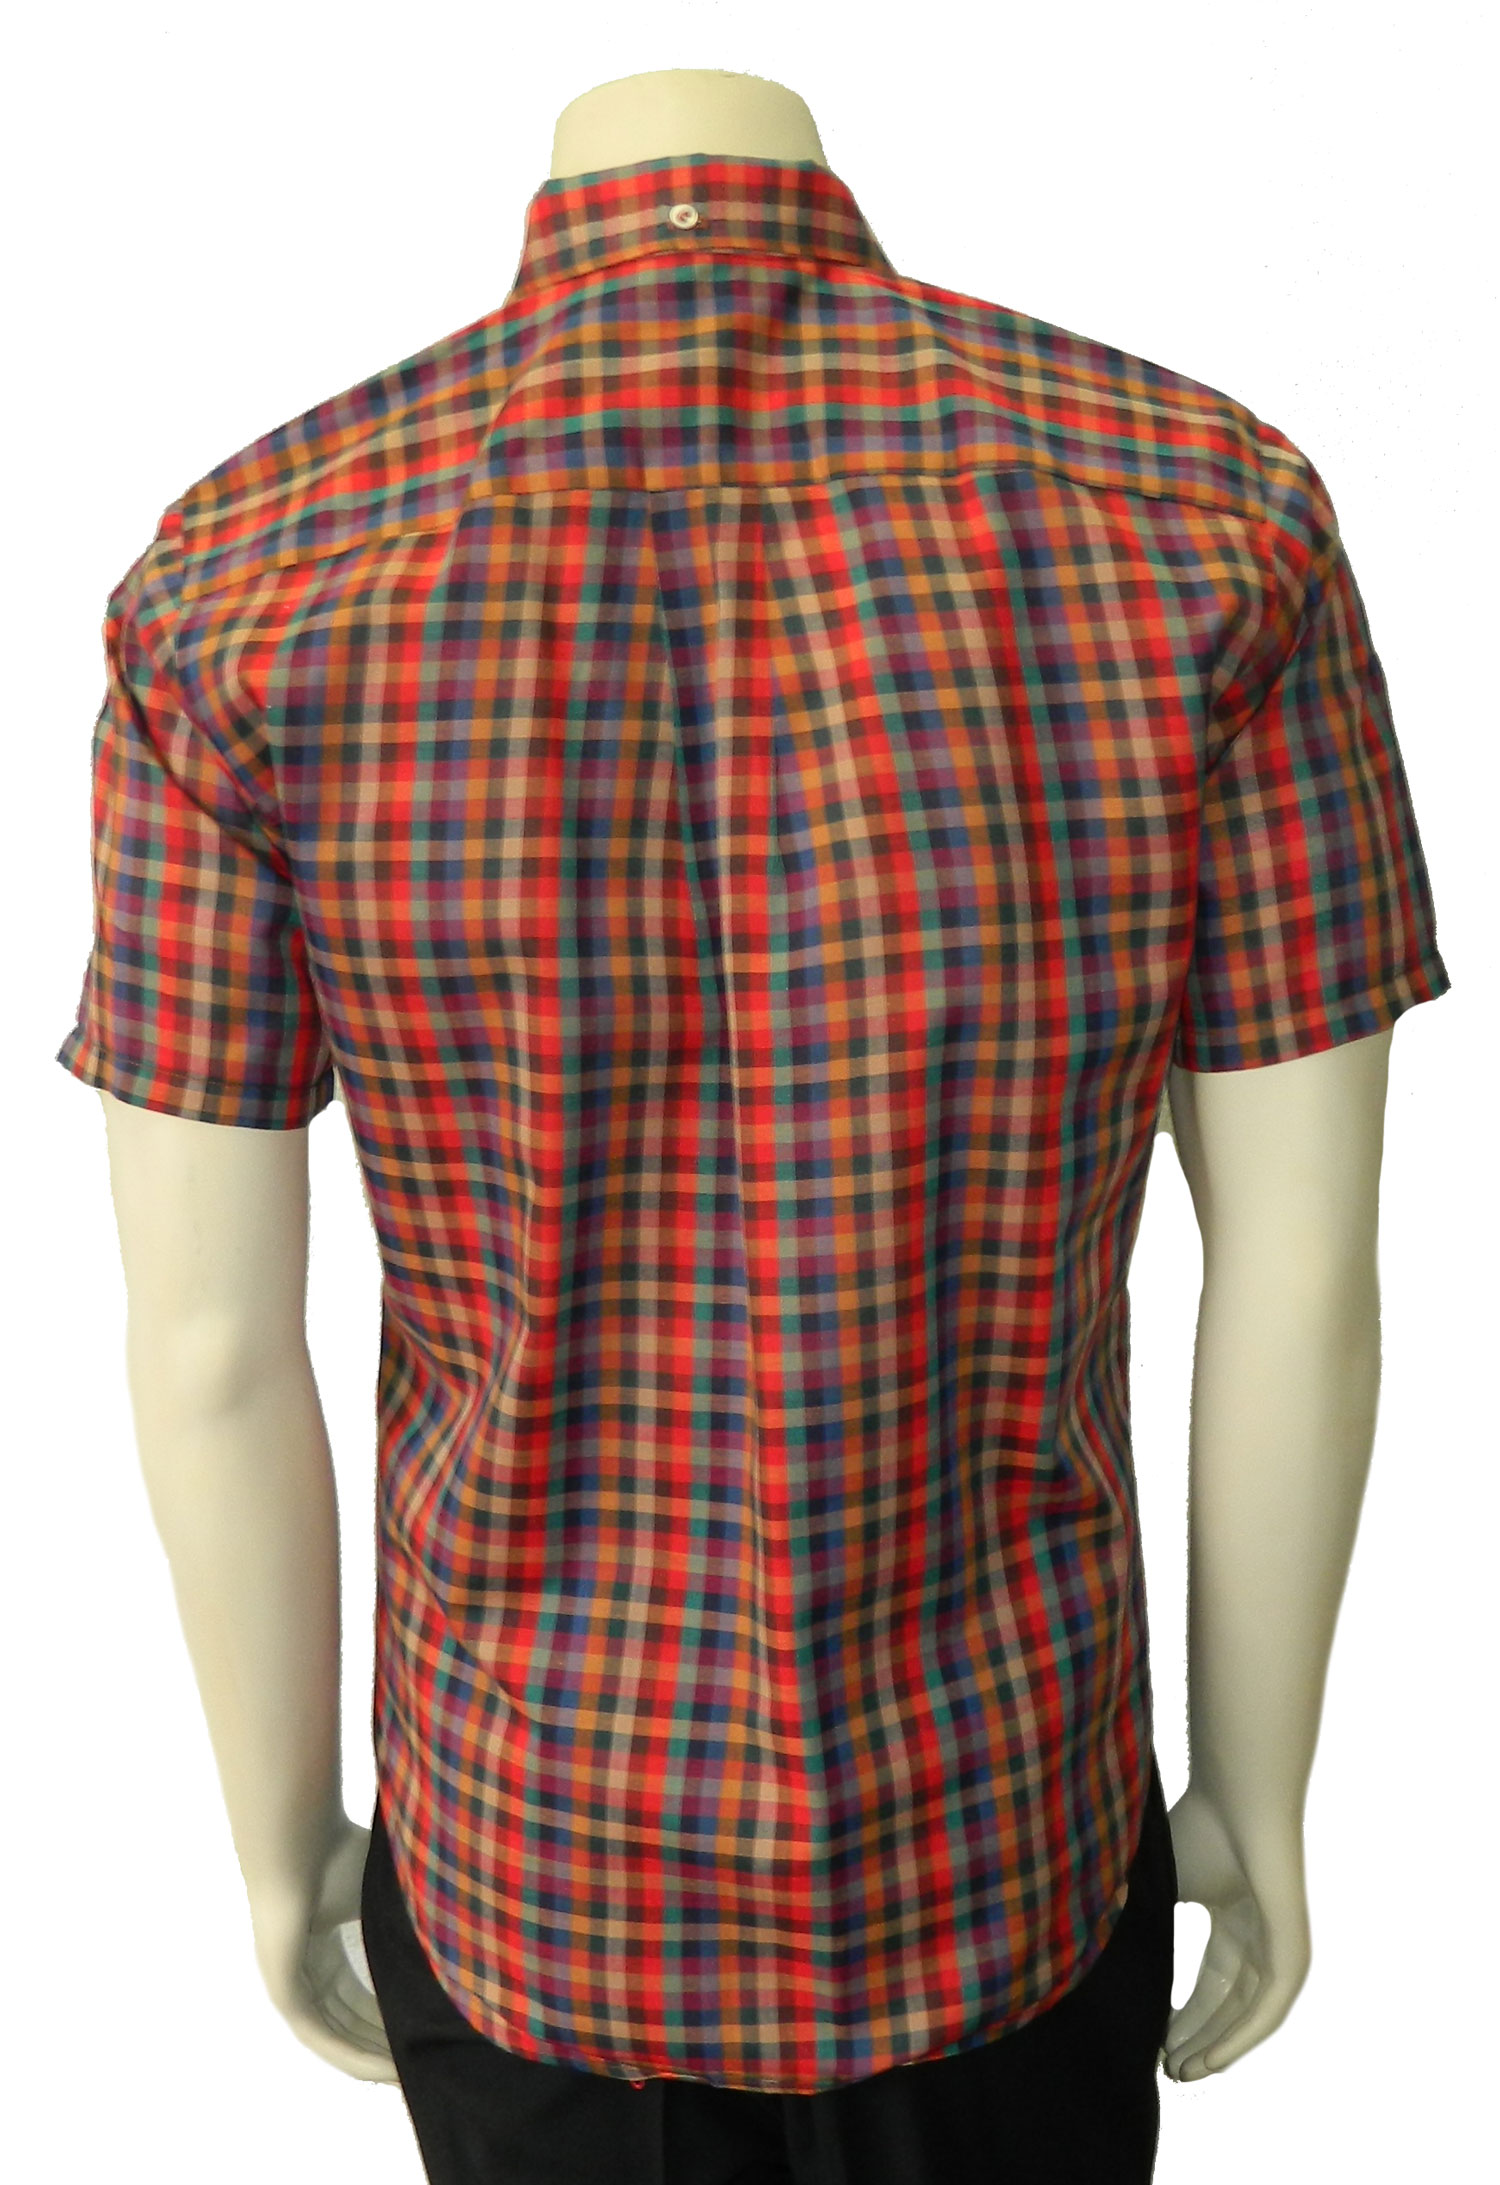 1960s tattersall plaid shirt